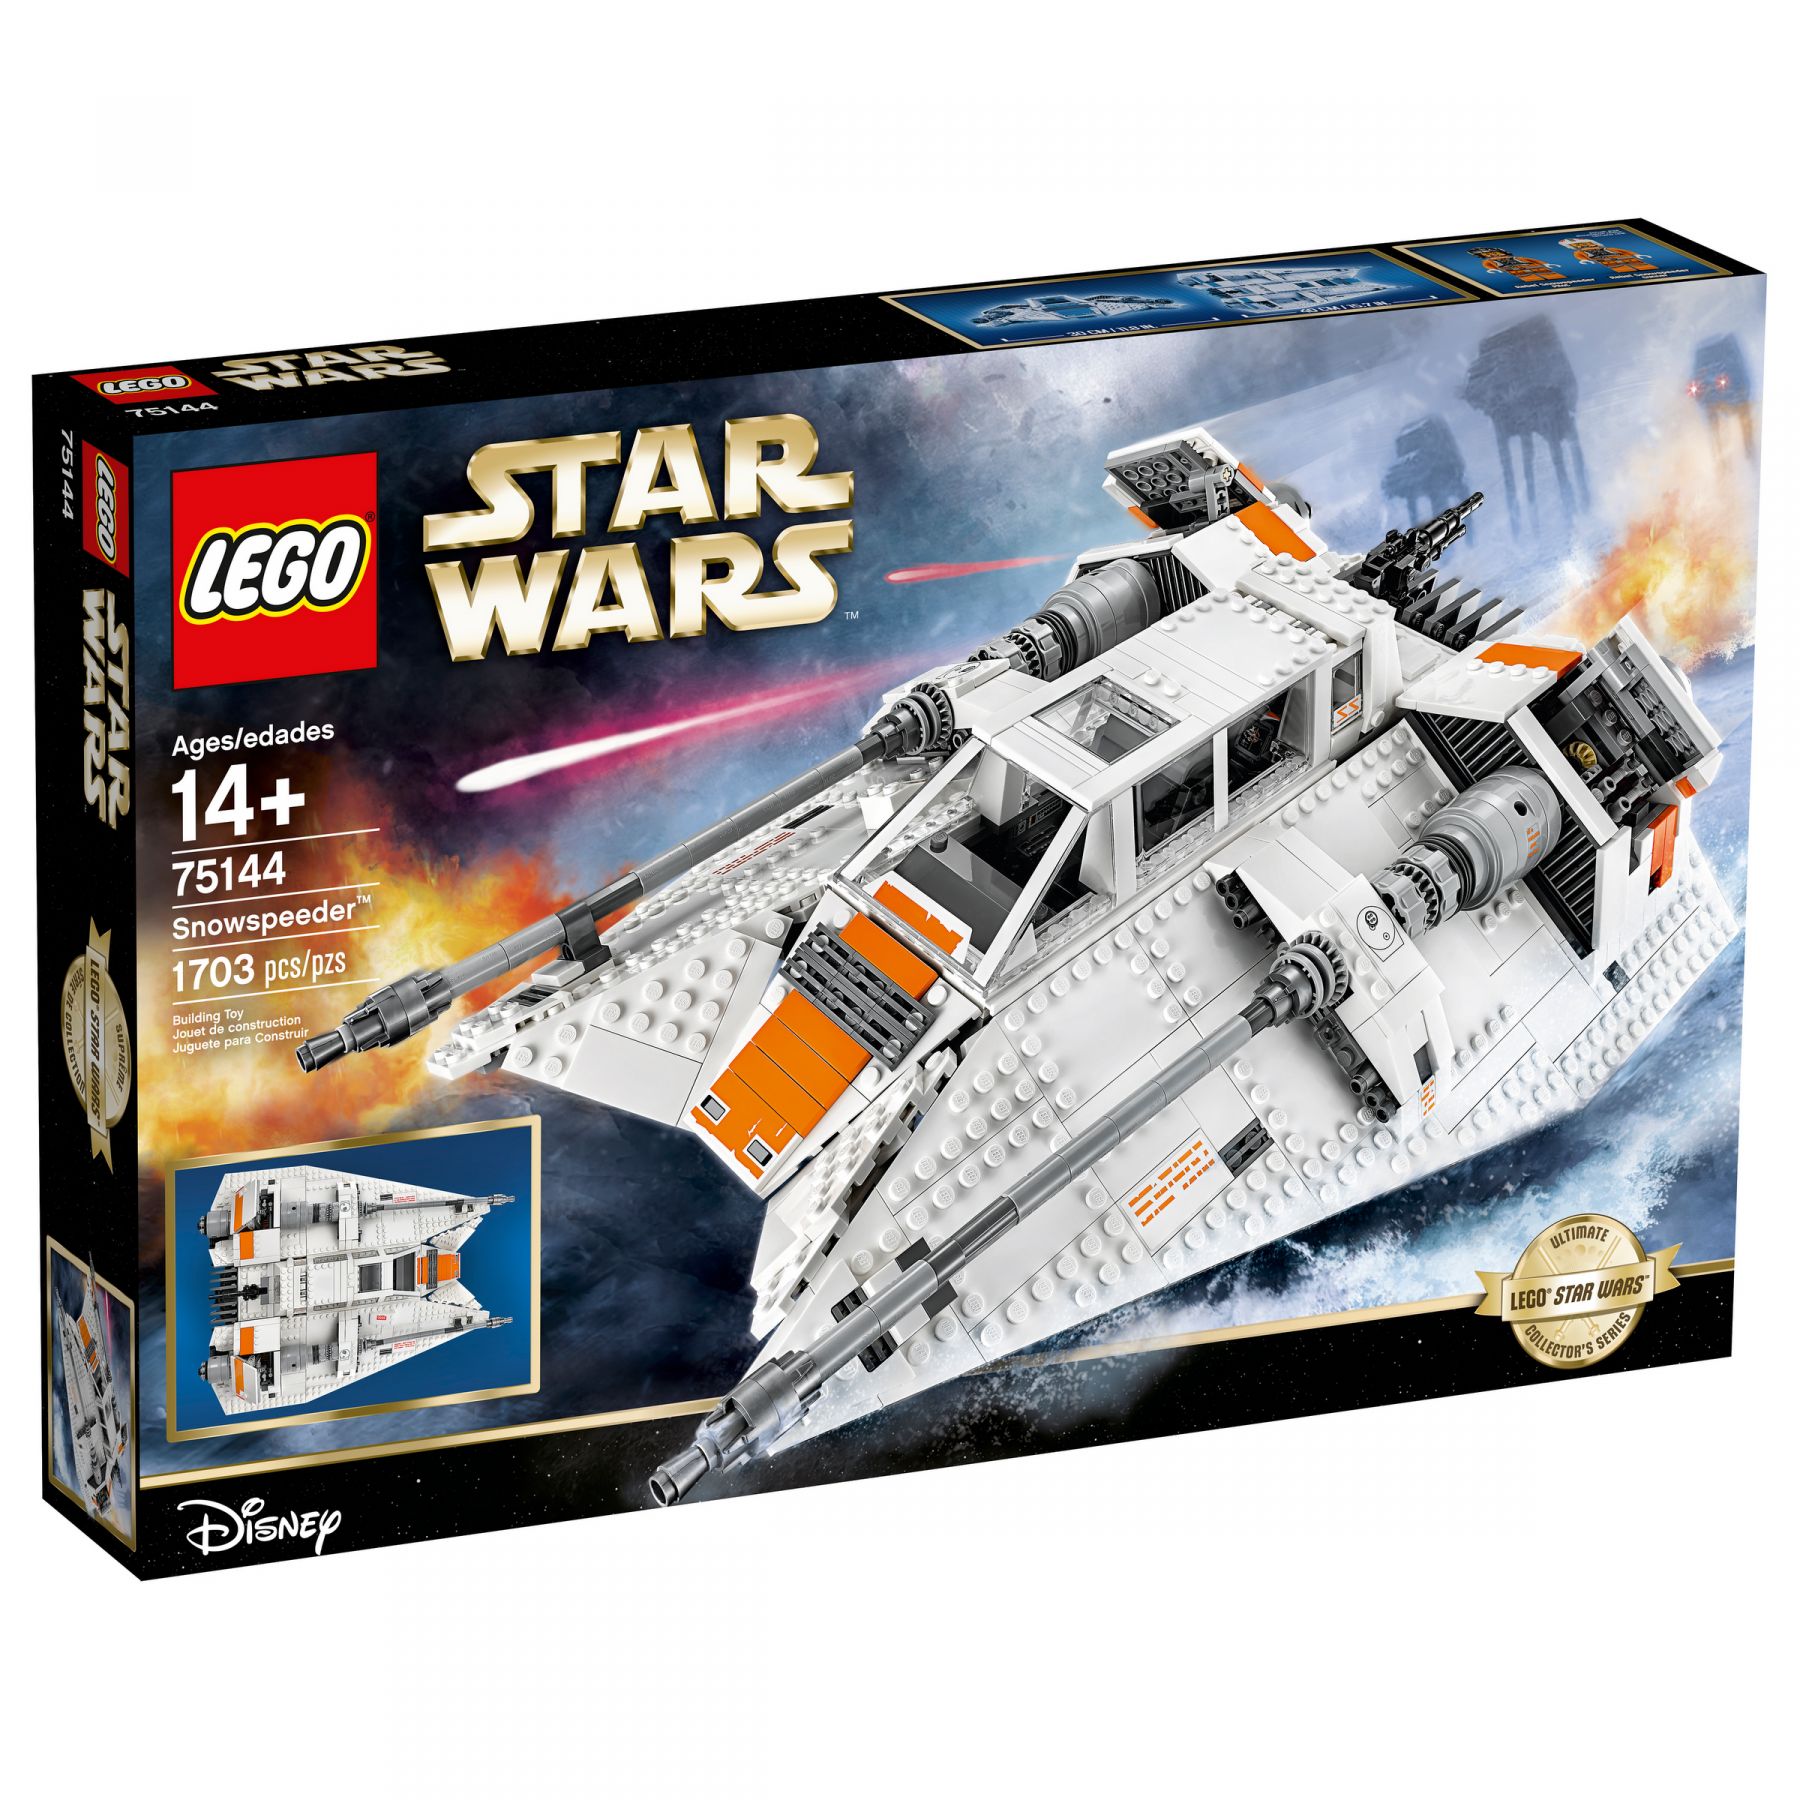 LEGO Star Wars 75144 Snowspeeder™ LEGO_75144_alt1.jpg